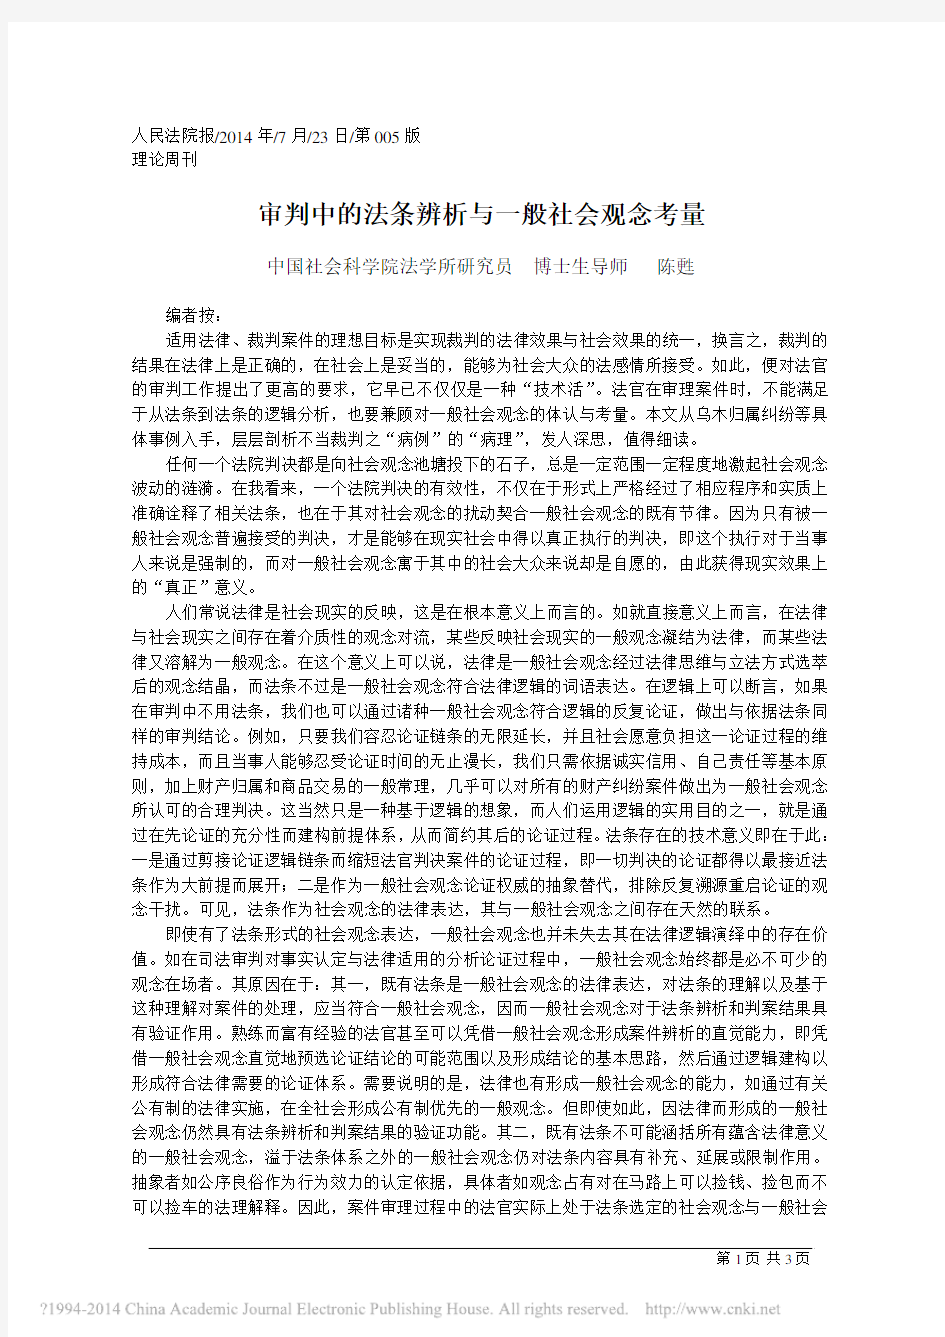 审判中的法条辨析与一般社会观念考量 - 中国法学网